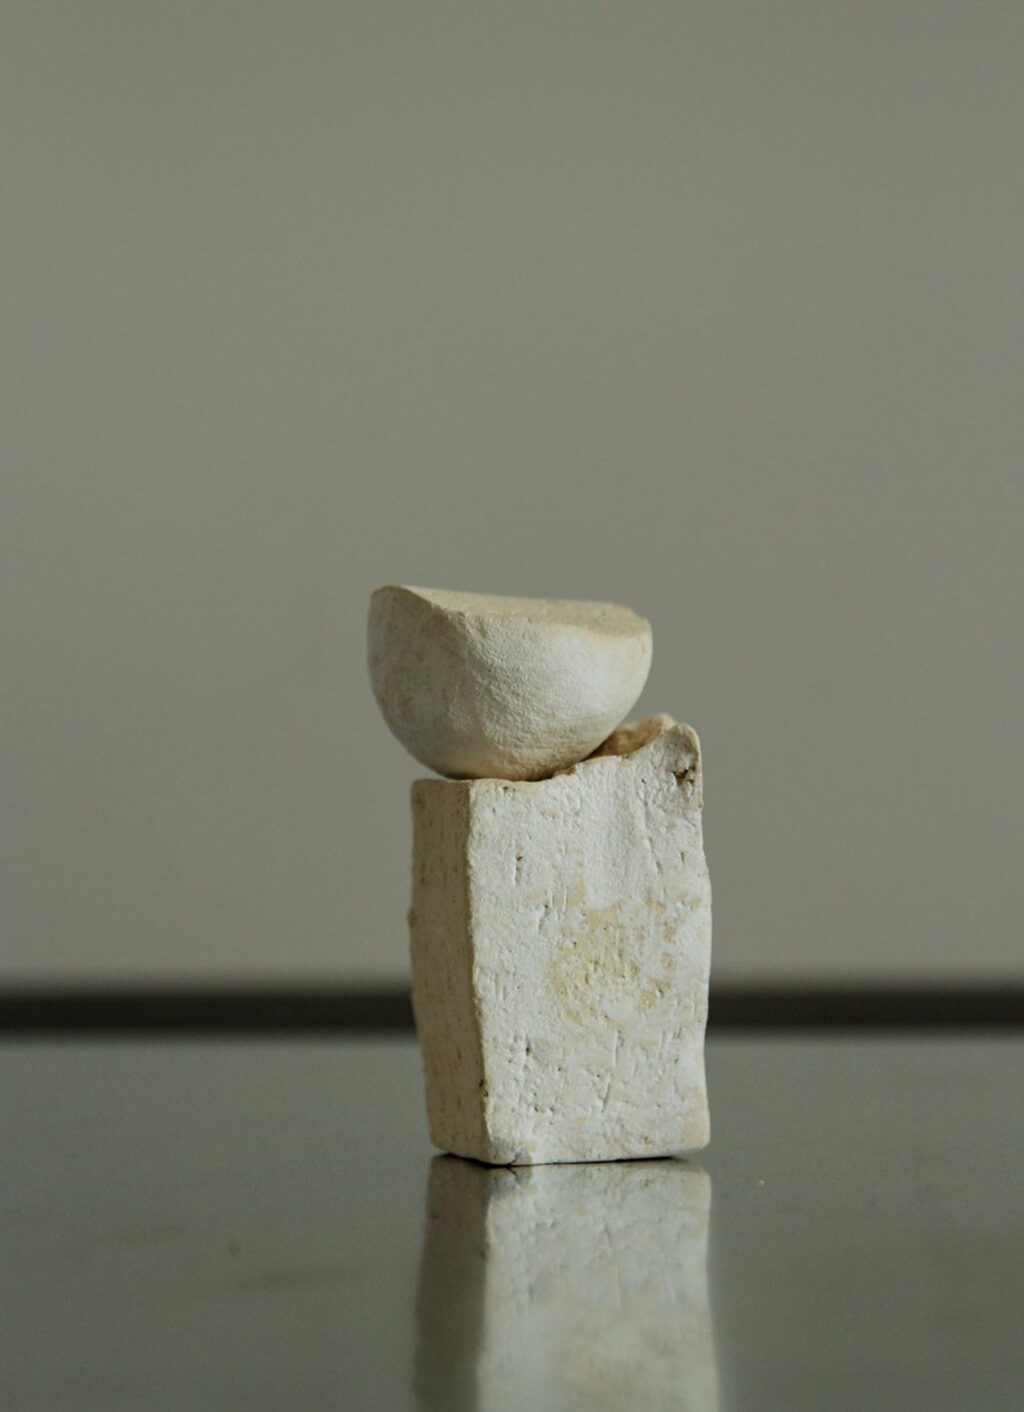 Aoiro Studio - Hakudo Moon Diffuser - Ceramic objects - 15ml Moon Essence in a Kiribako Box from Kanazawa